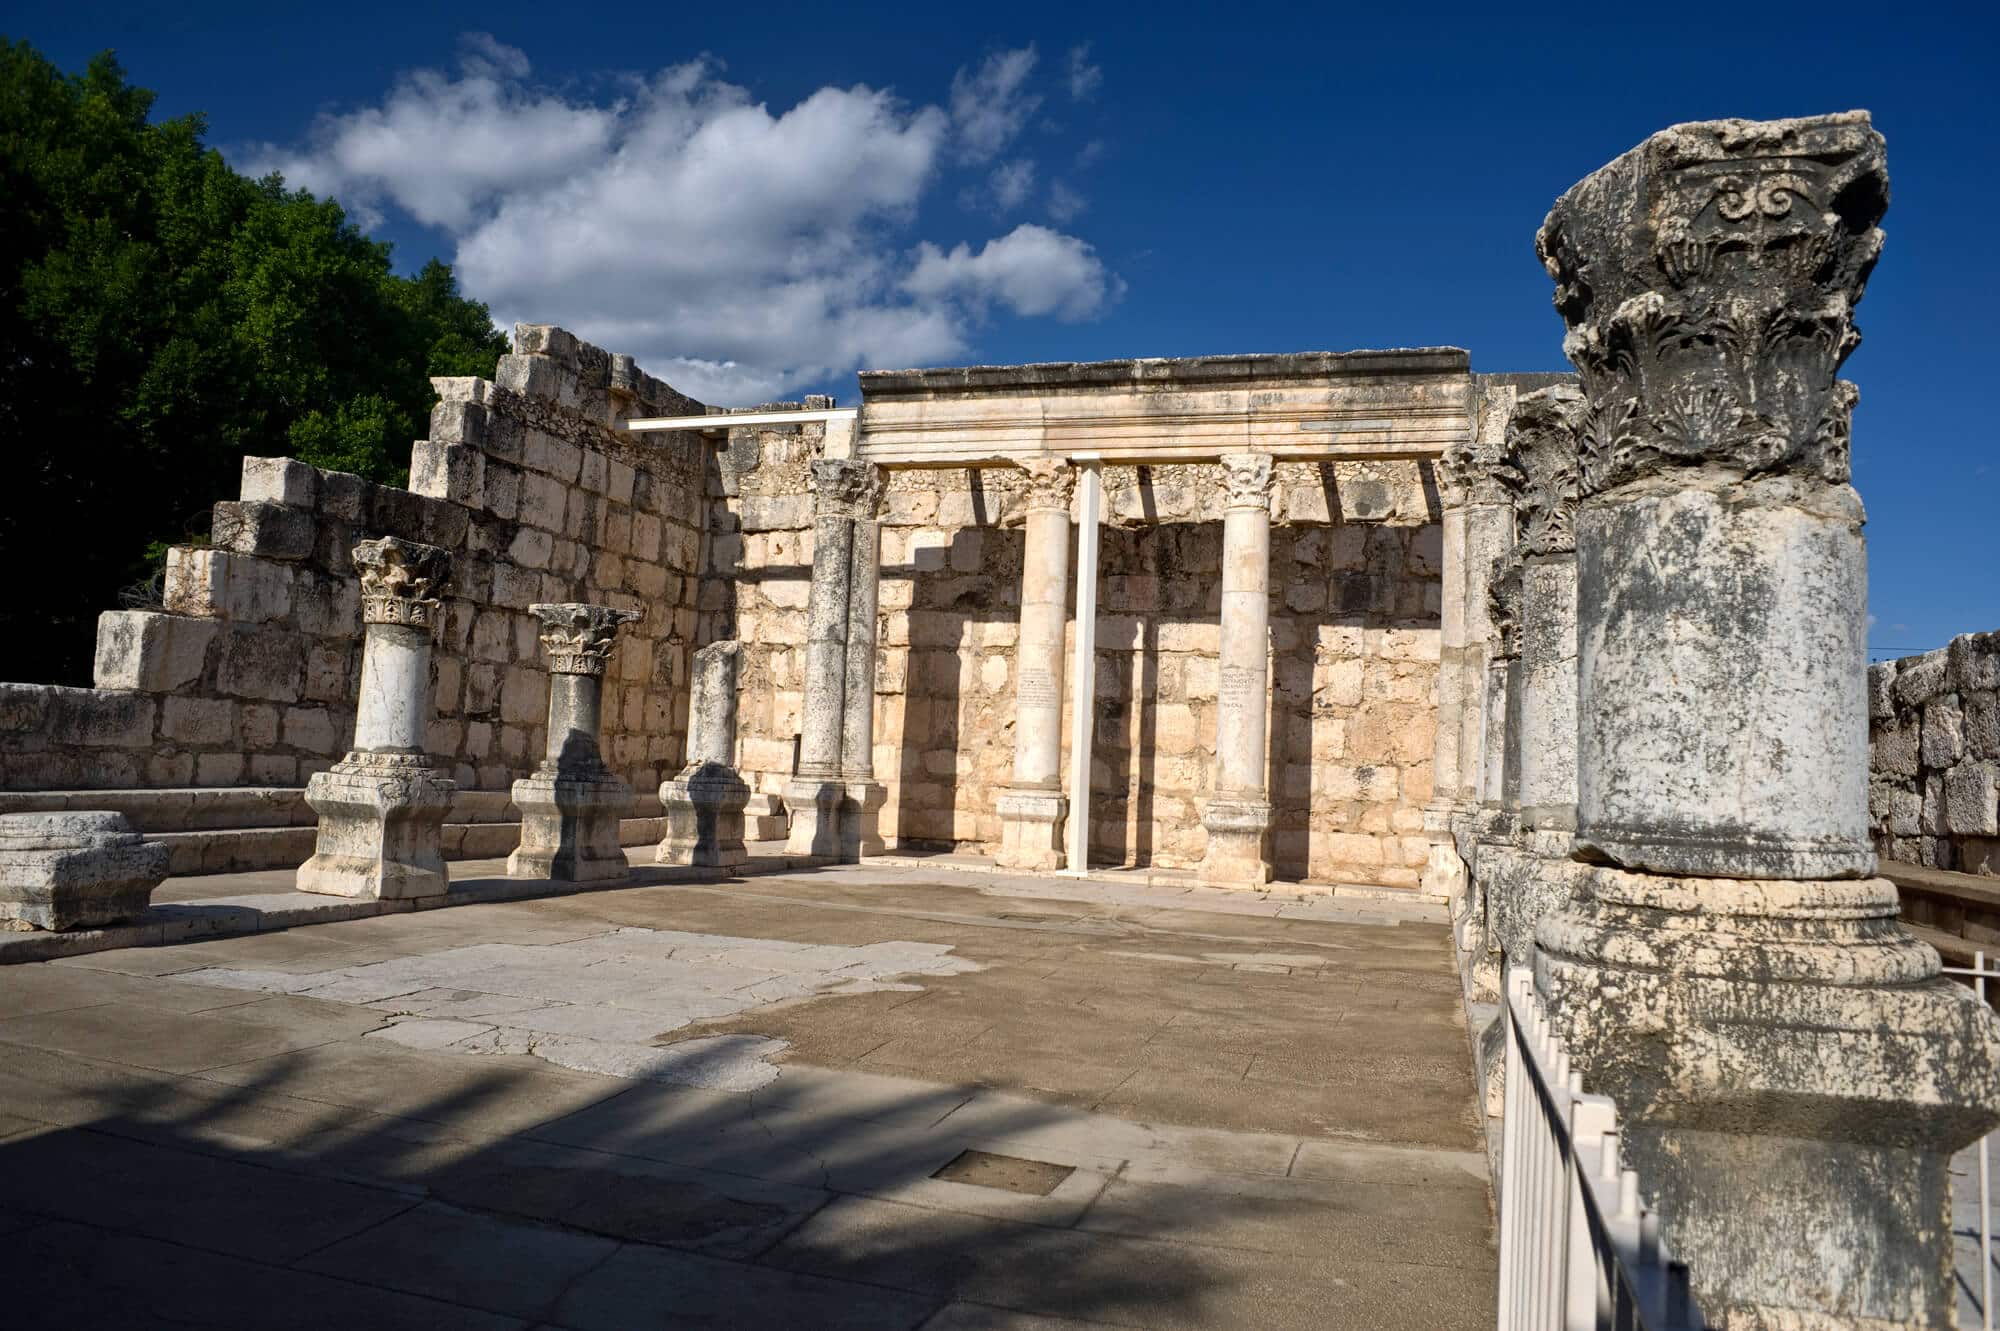 שרידי בית הכנסת העתיק בכפר נחום, מהמאה הרביעית או החמישית לספירה. <a href="https://depositphotos.com. ">המחשה: depositphotos.com</a>